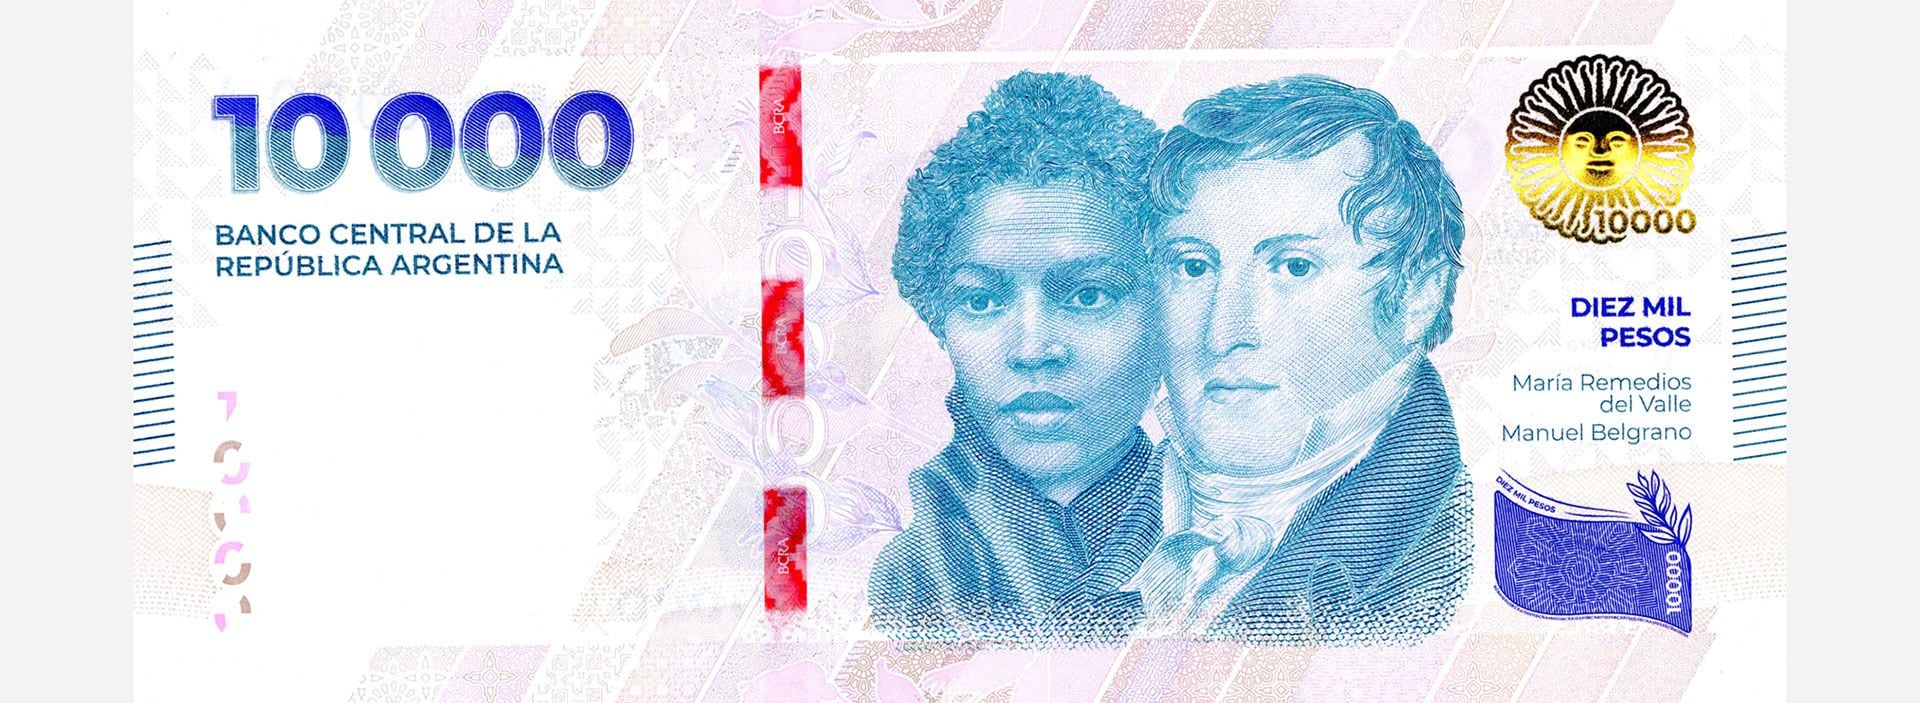 Quién fue María Remedios del Valle, la heroína que está en el billete de $10.000 junto a Manuel Belgrano